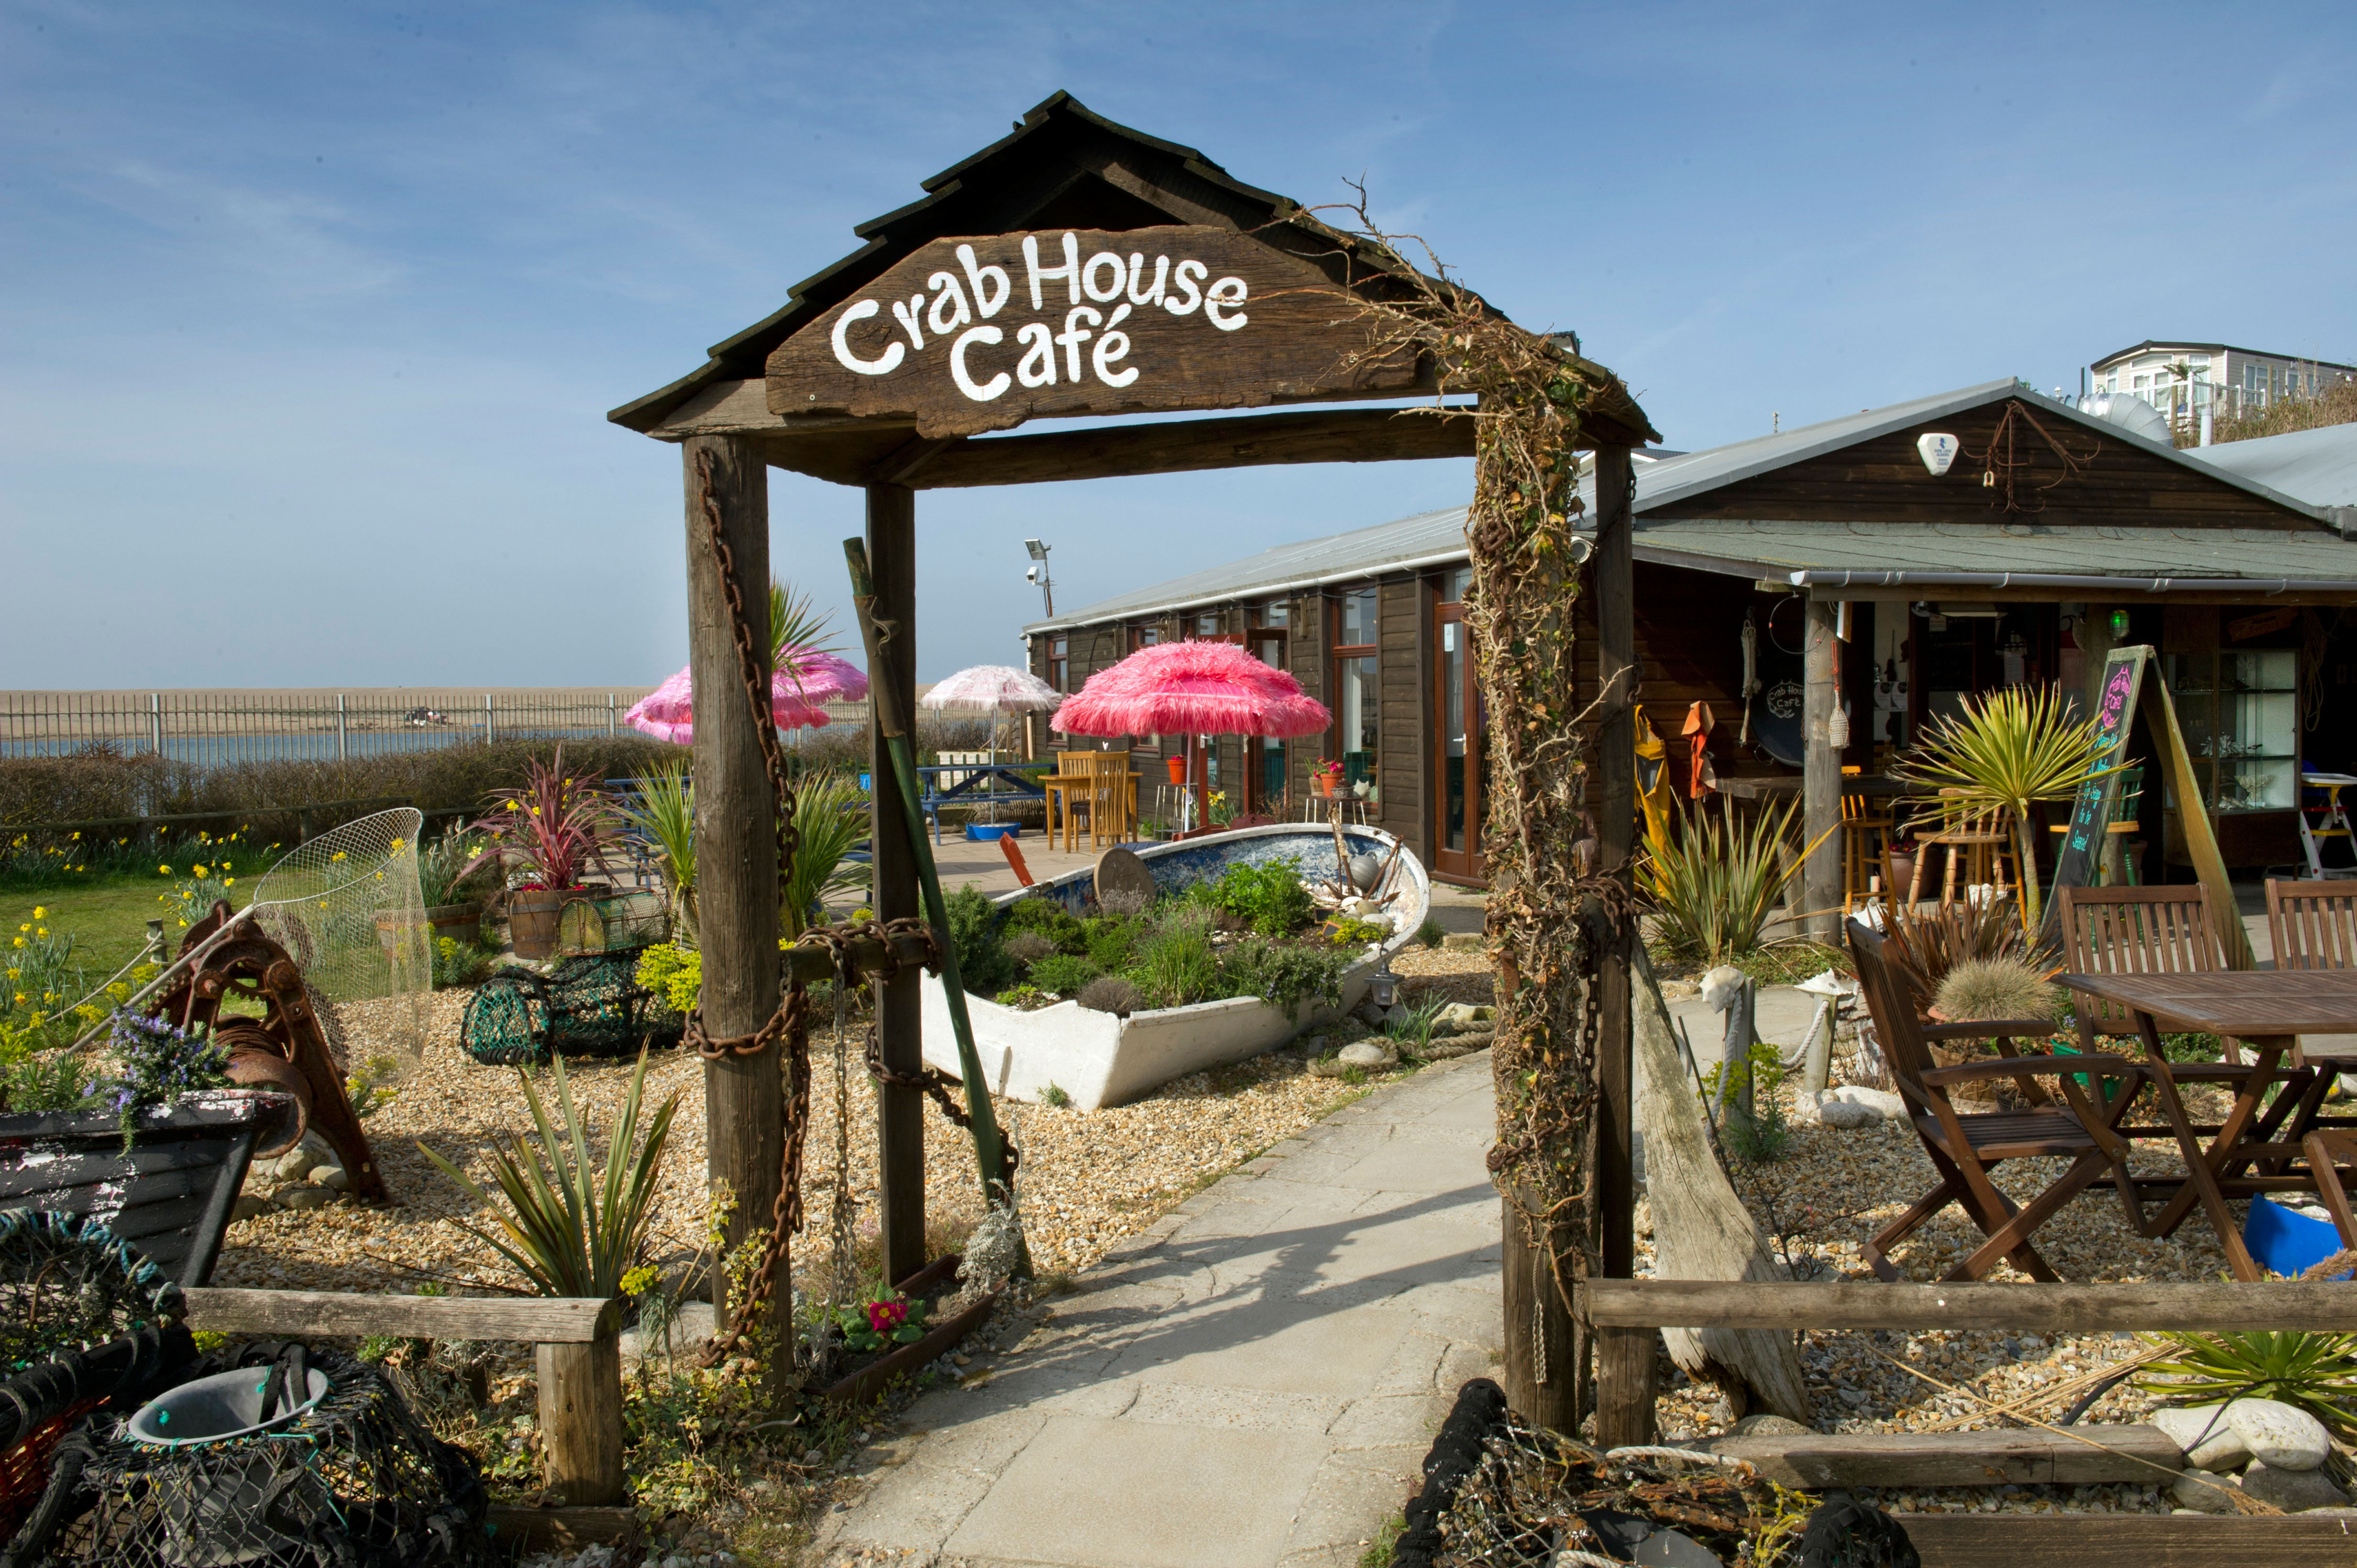 Wyke ist die Heimat des berühmten Crab House Café